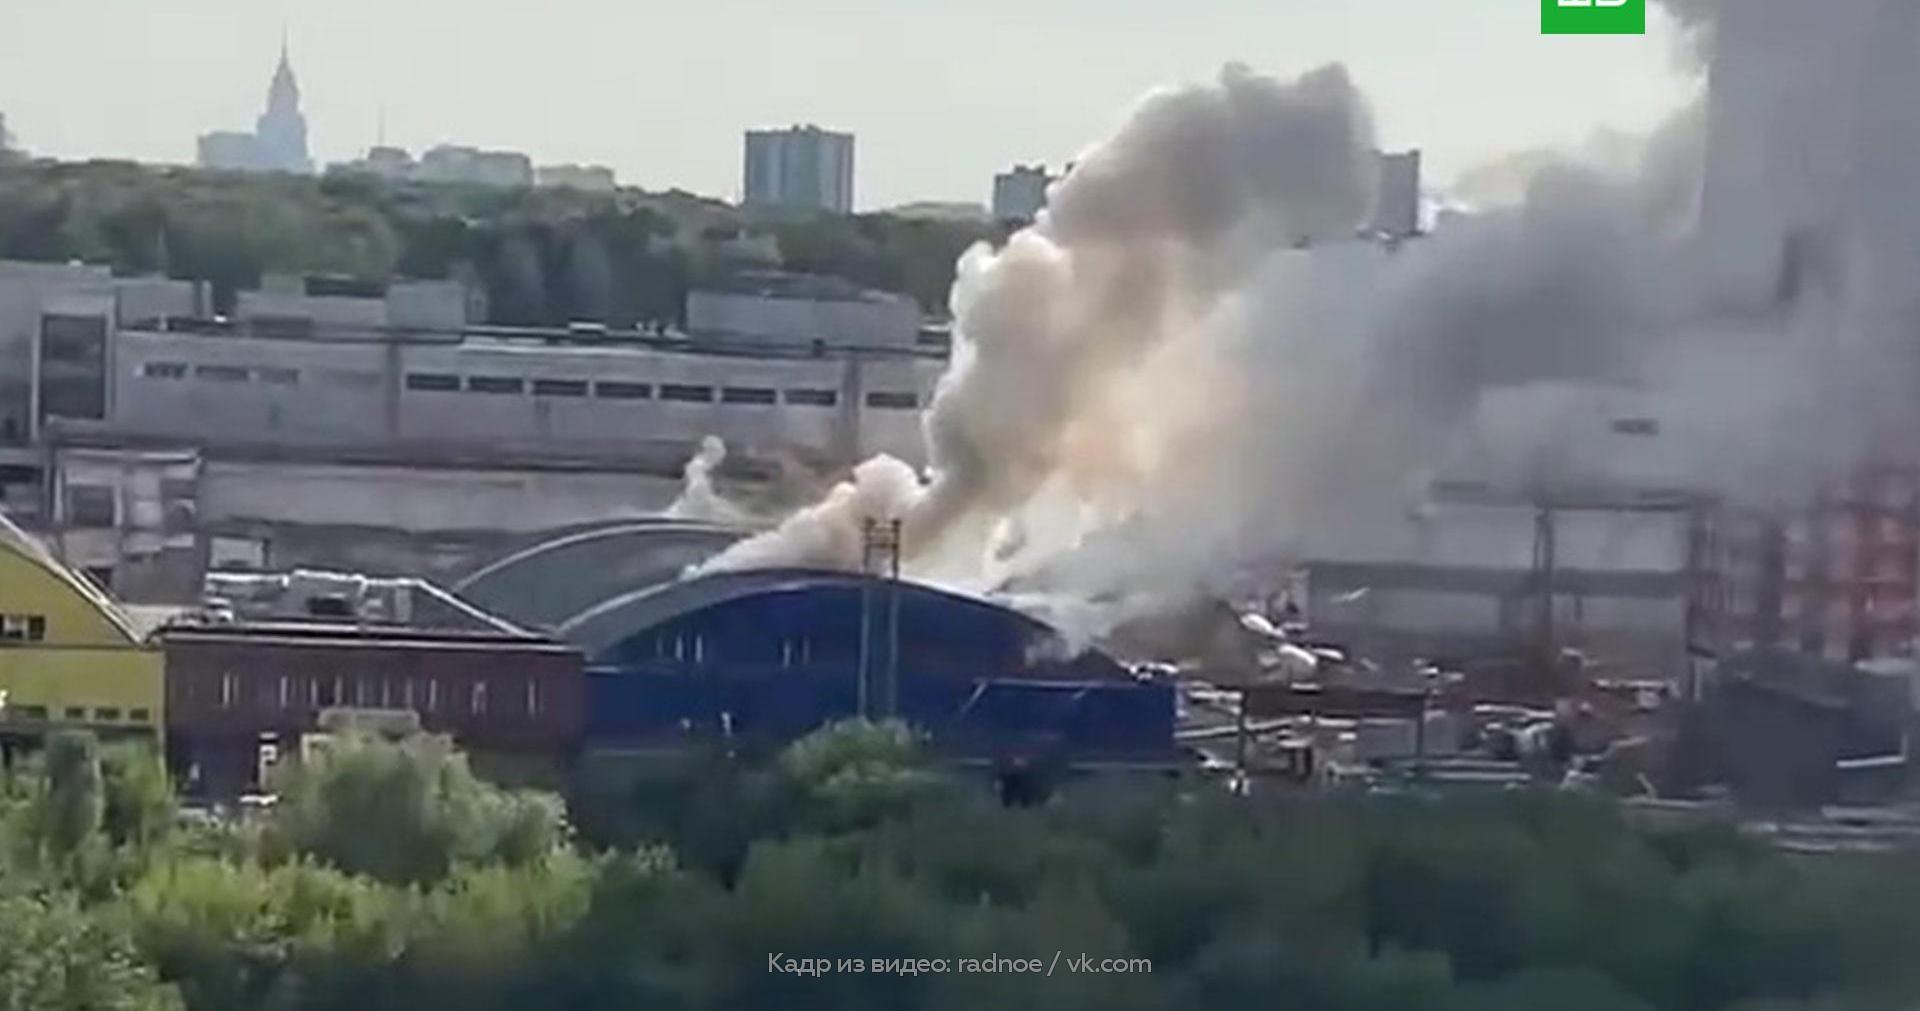 Какая трагедия произошла сегодня в москве. Пожар на складе Отрадное. Пожар в Москве. Пожар в Москве сейчас. Пожар в Отрадном сейчас.